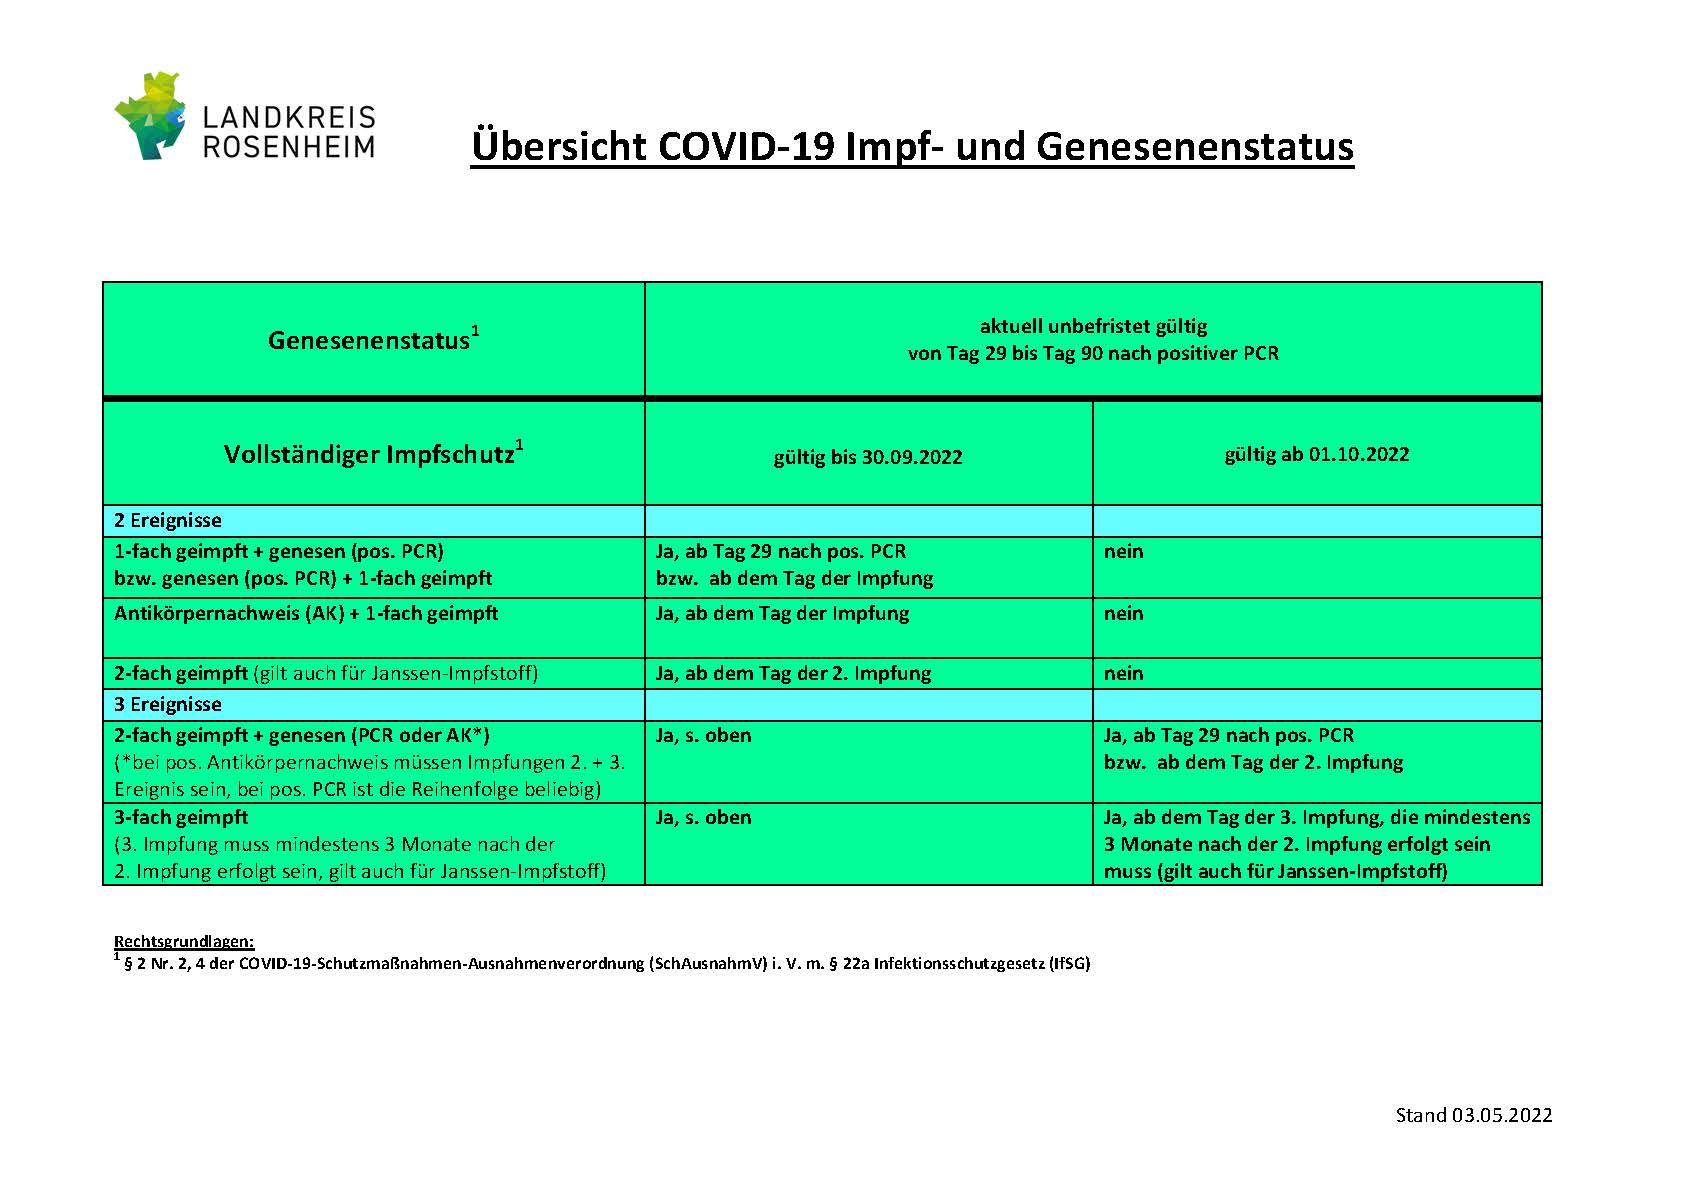 Übersicht COVID-19 Impf- und Genesenenstatus Stand 04.05.22